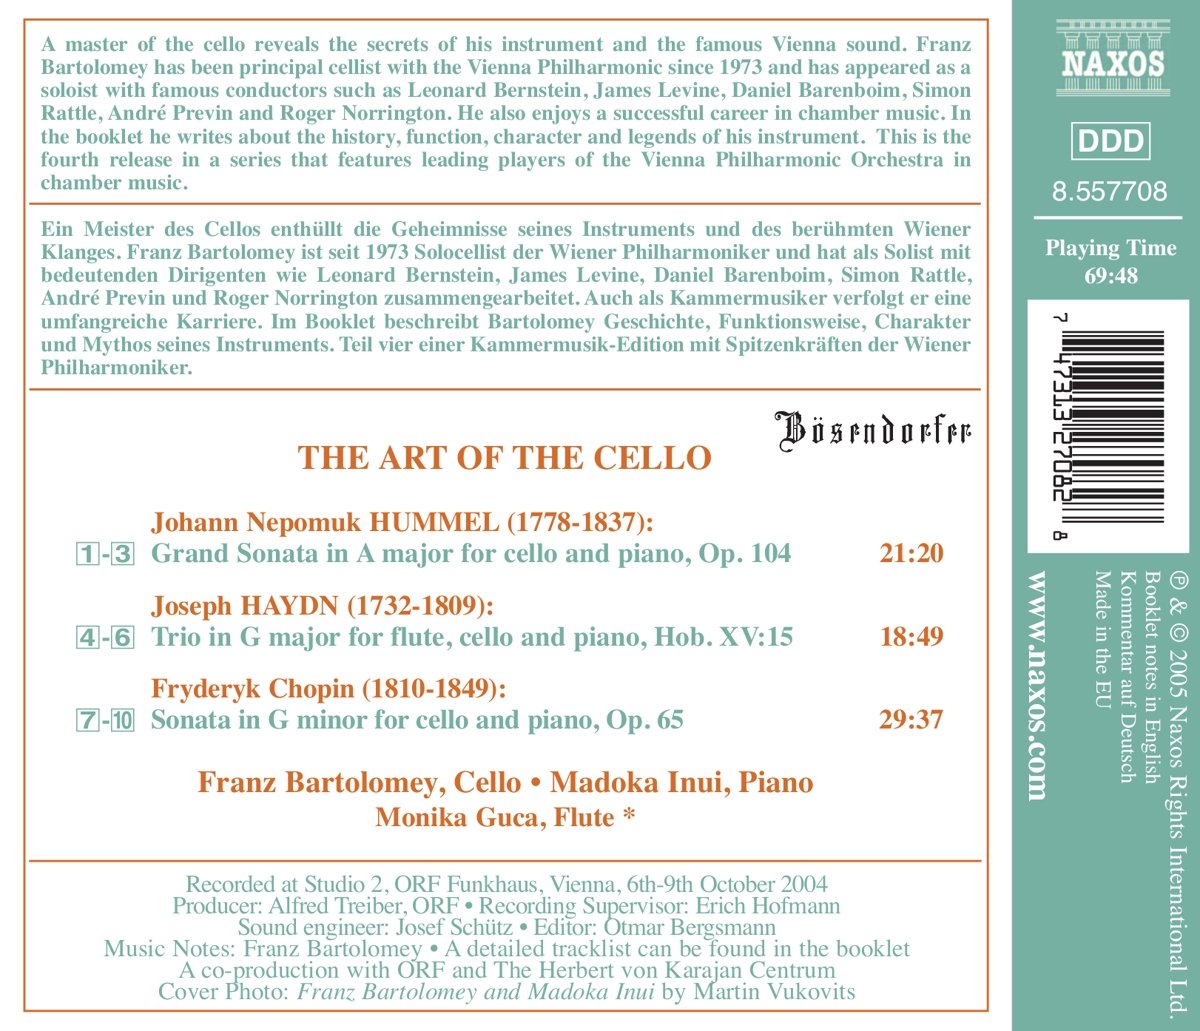 프란츠 바르톨로메이가 연주하는 첼로 음악 (Franz Bartolomey - The Art Of The Cello) 